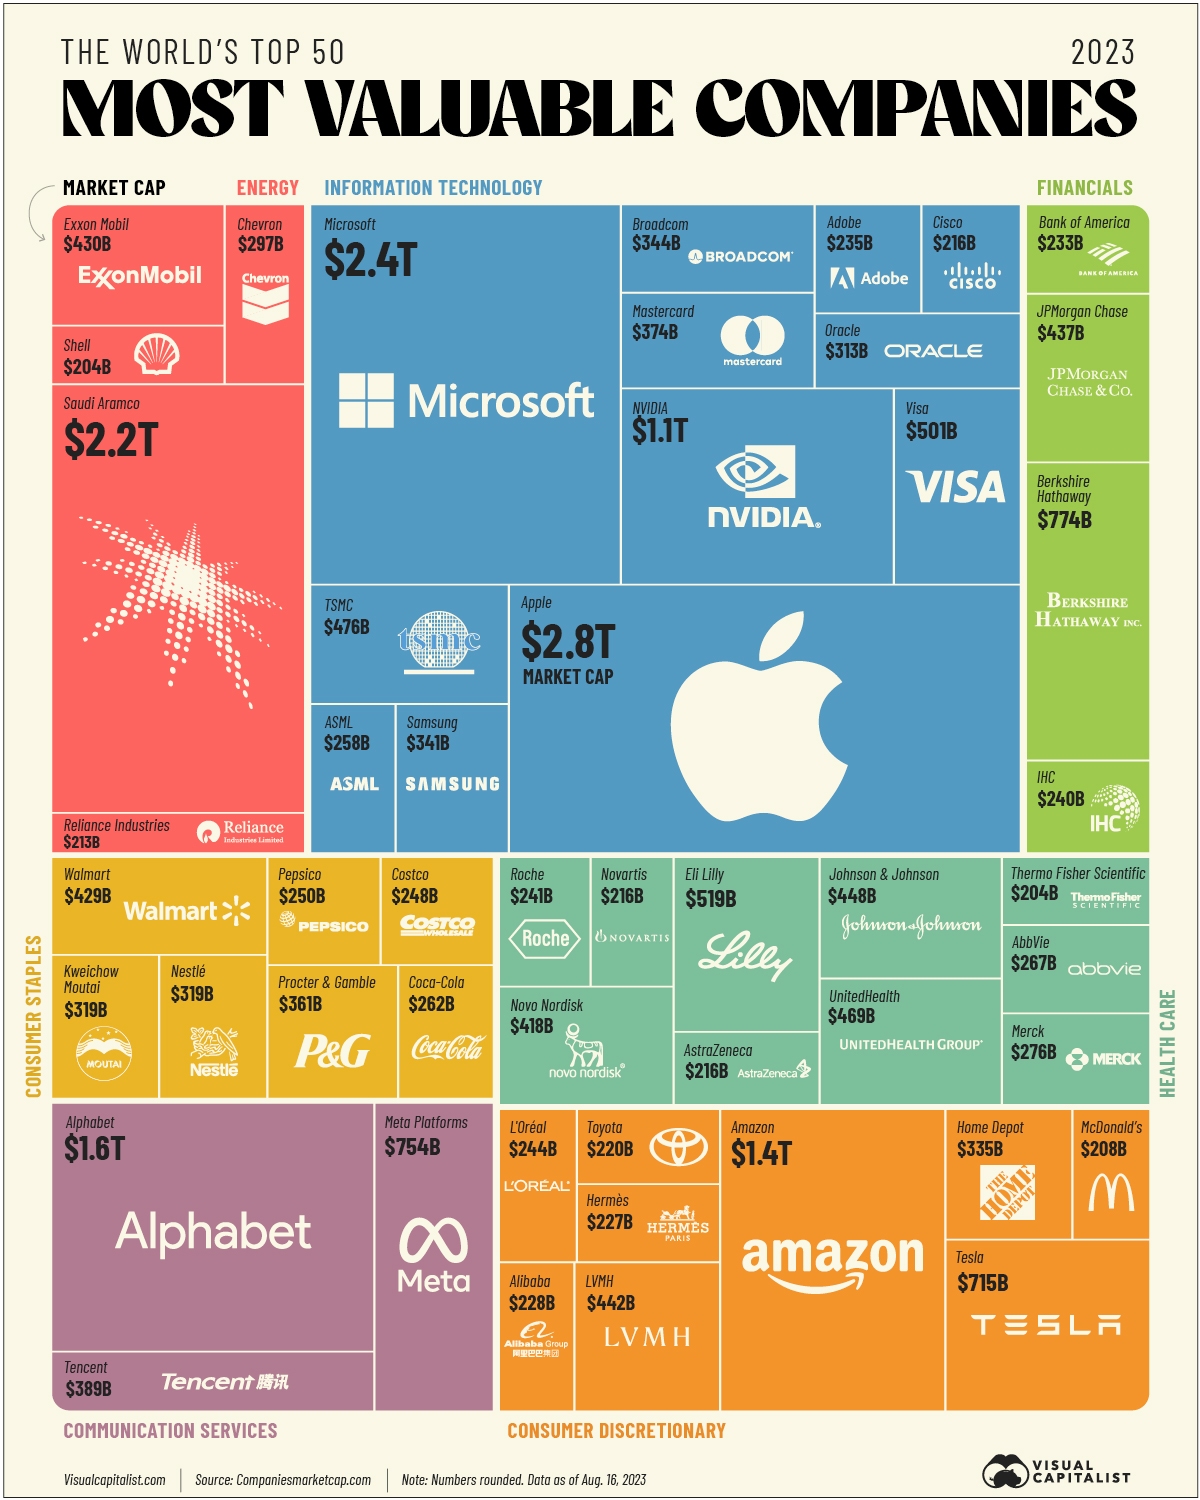 ۵۰ شرکت با ارزش در جهان در سال ۲۰۳۰